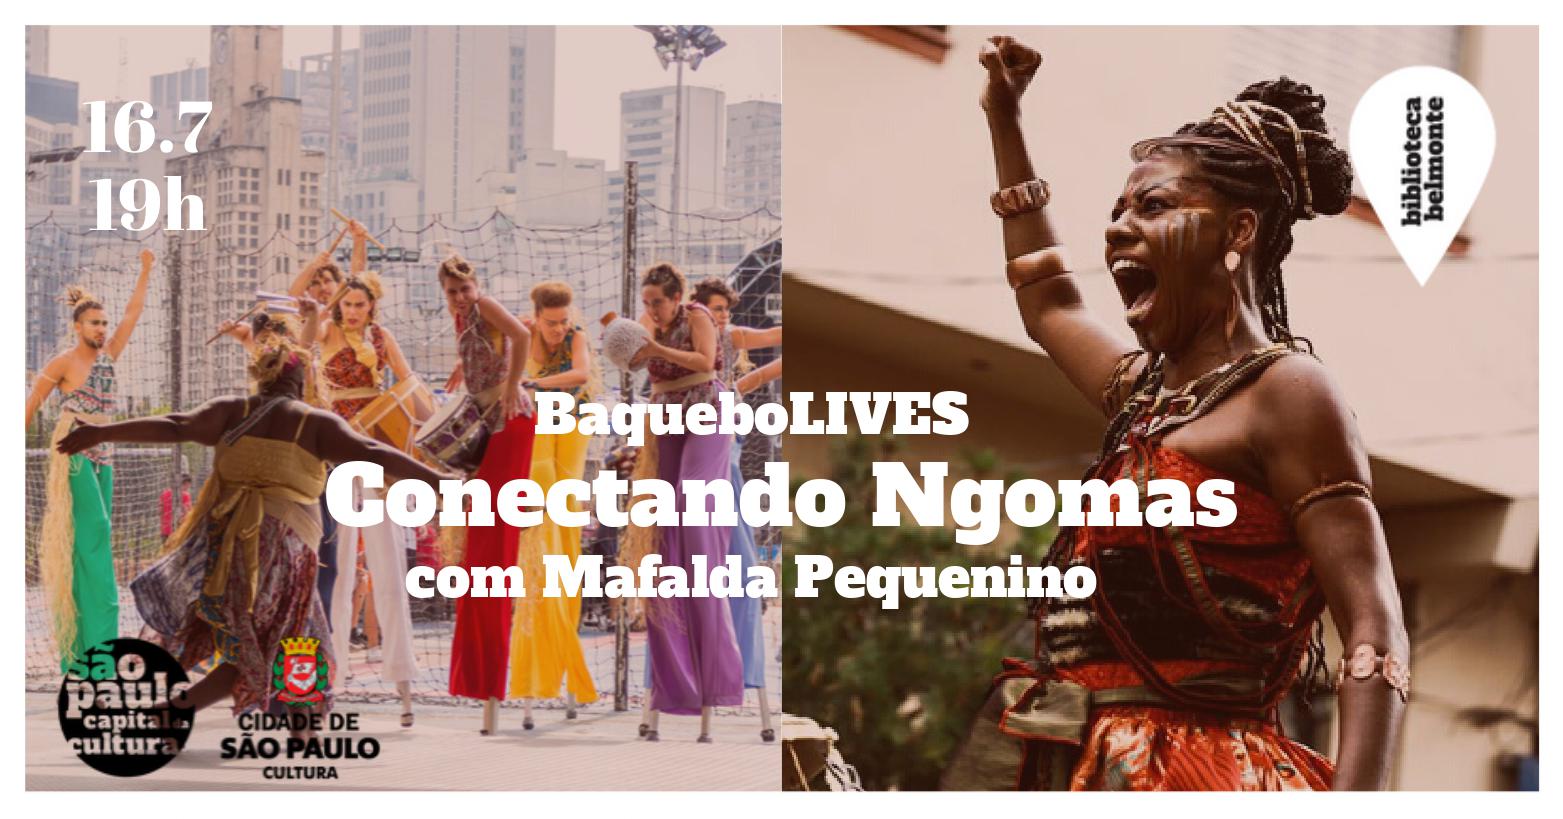 BaqueboLIVES: CONECTANDO NGOMAS com Mafalda Pequenino